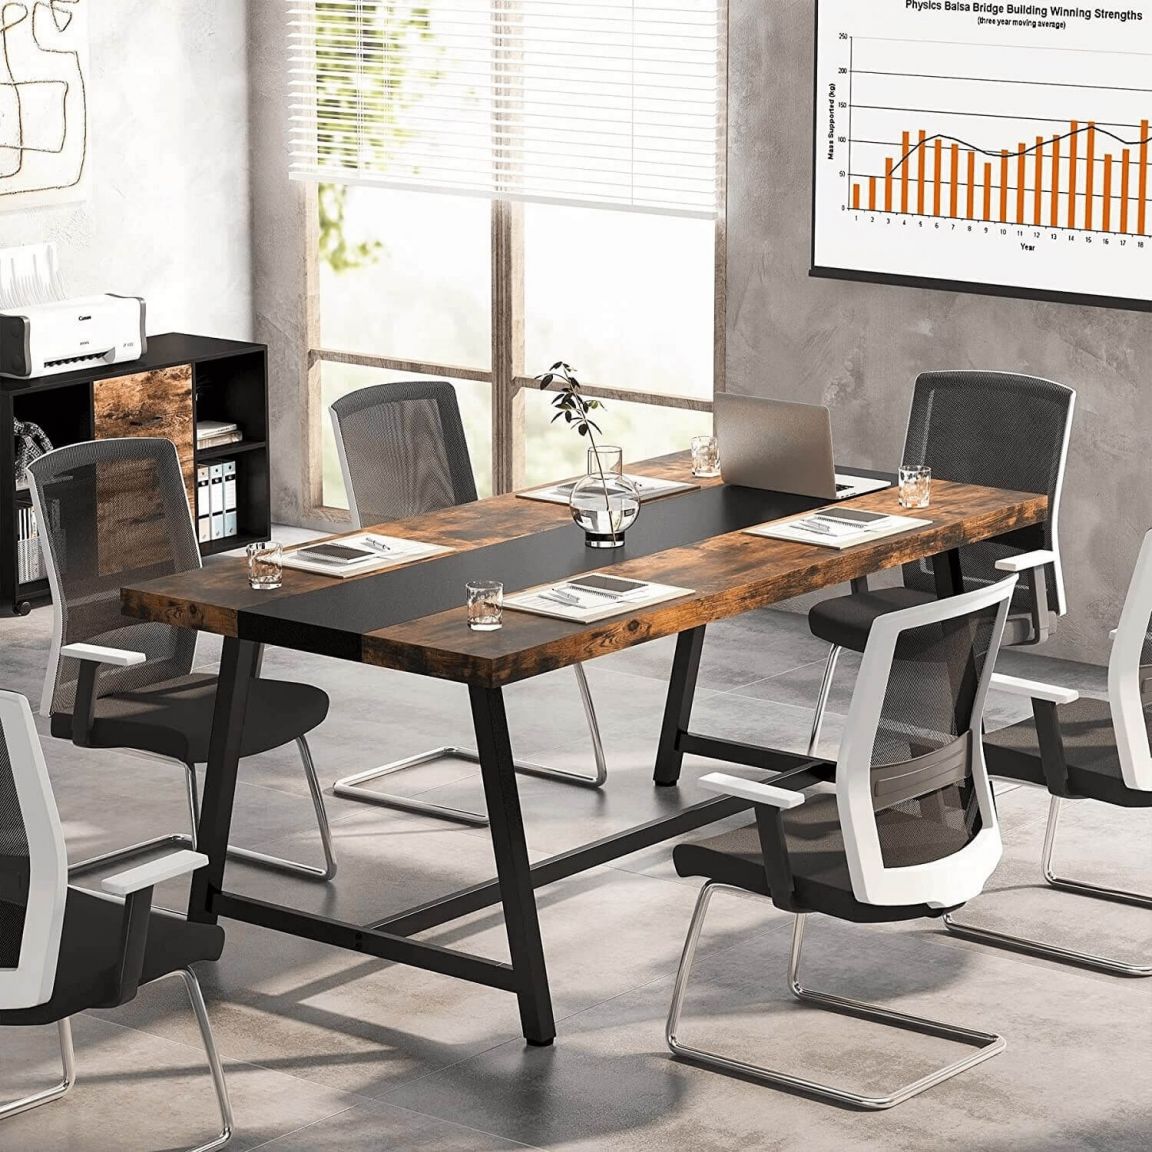 Mẫu bàn làm việc gỗ công nghiệp có thiết kế đơn giản, phù hợp với nhiều mẫu văn phòng khác nhau 